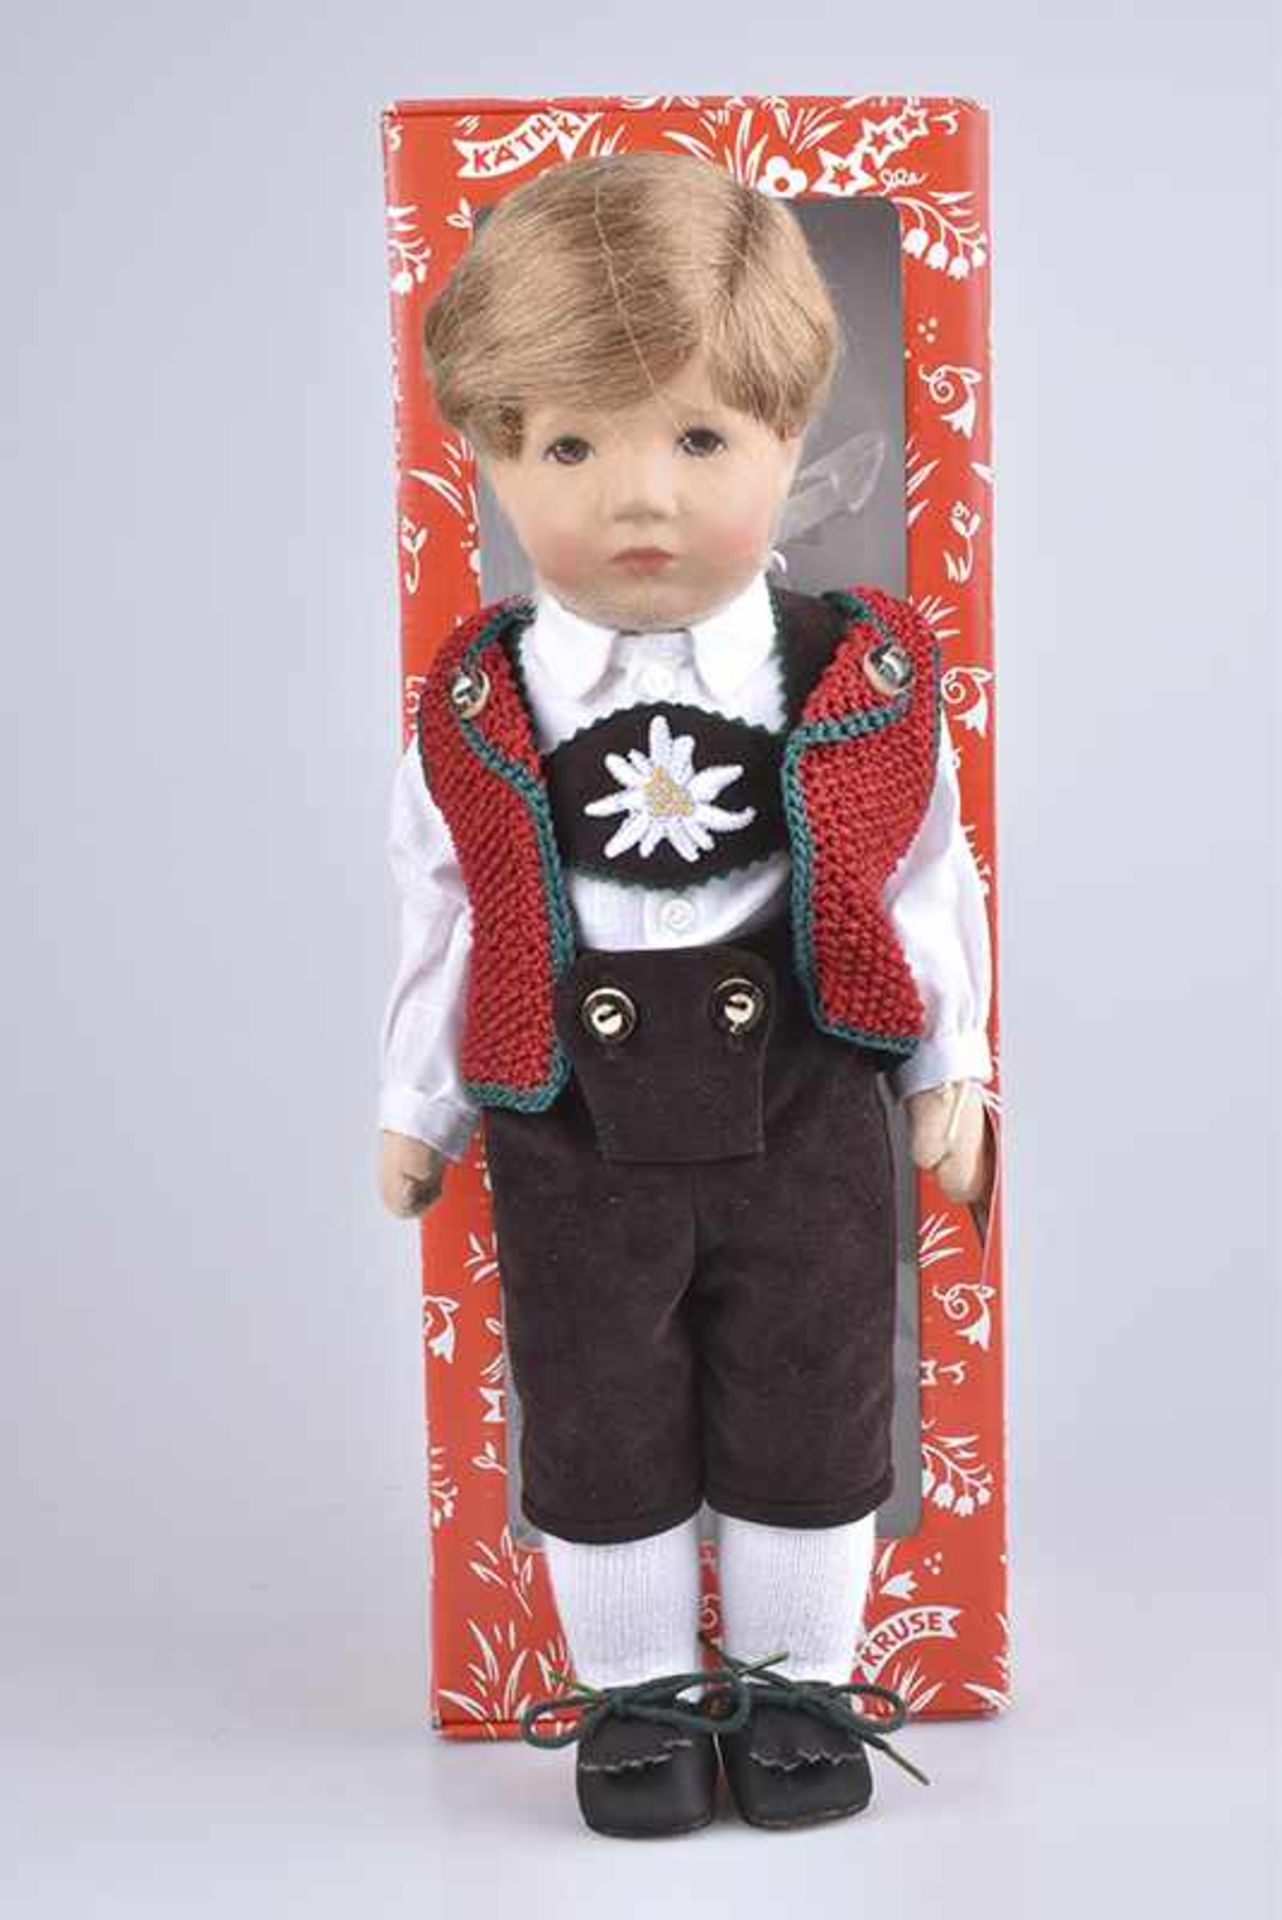 KÄTHE KRUSE Puppe "Maxl Bub", Typ 35 H, Kunststoffkopf, Stoffkörper mit locker angenähten Armen